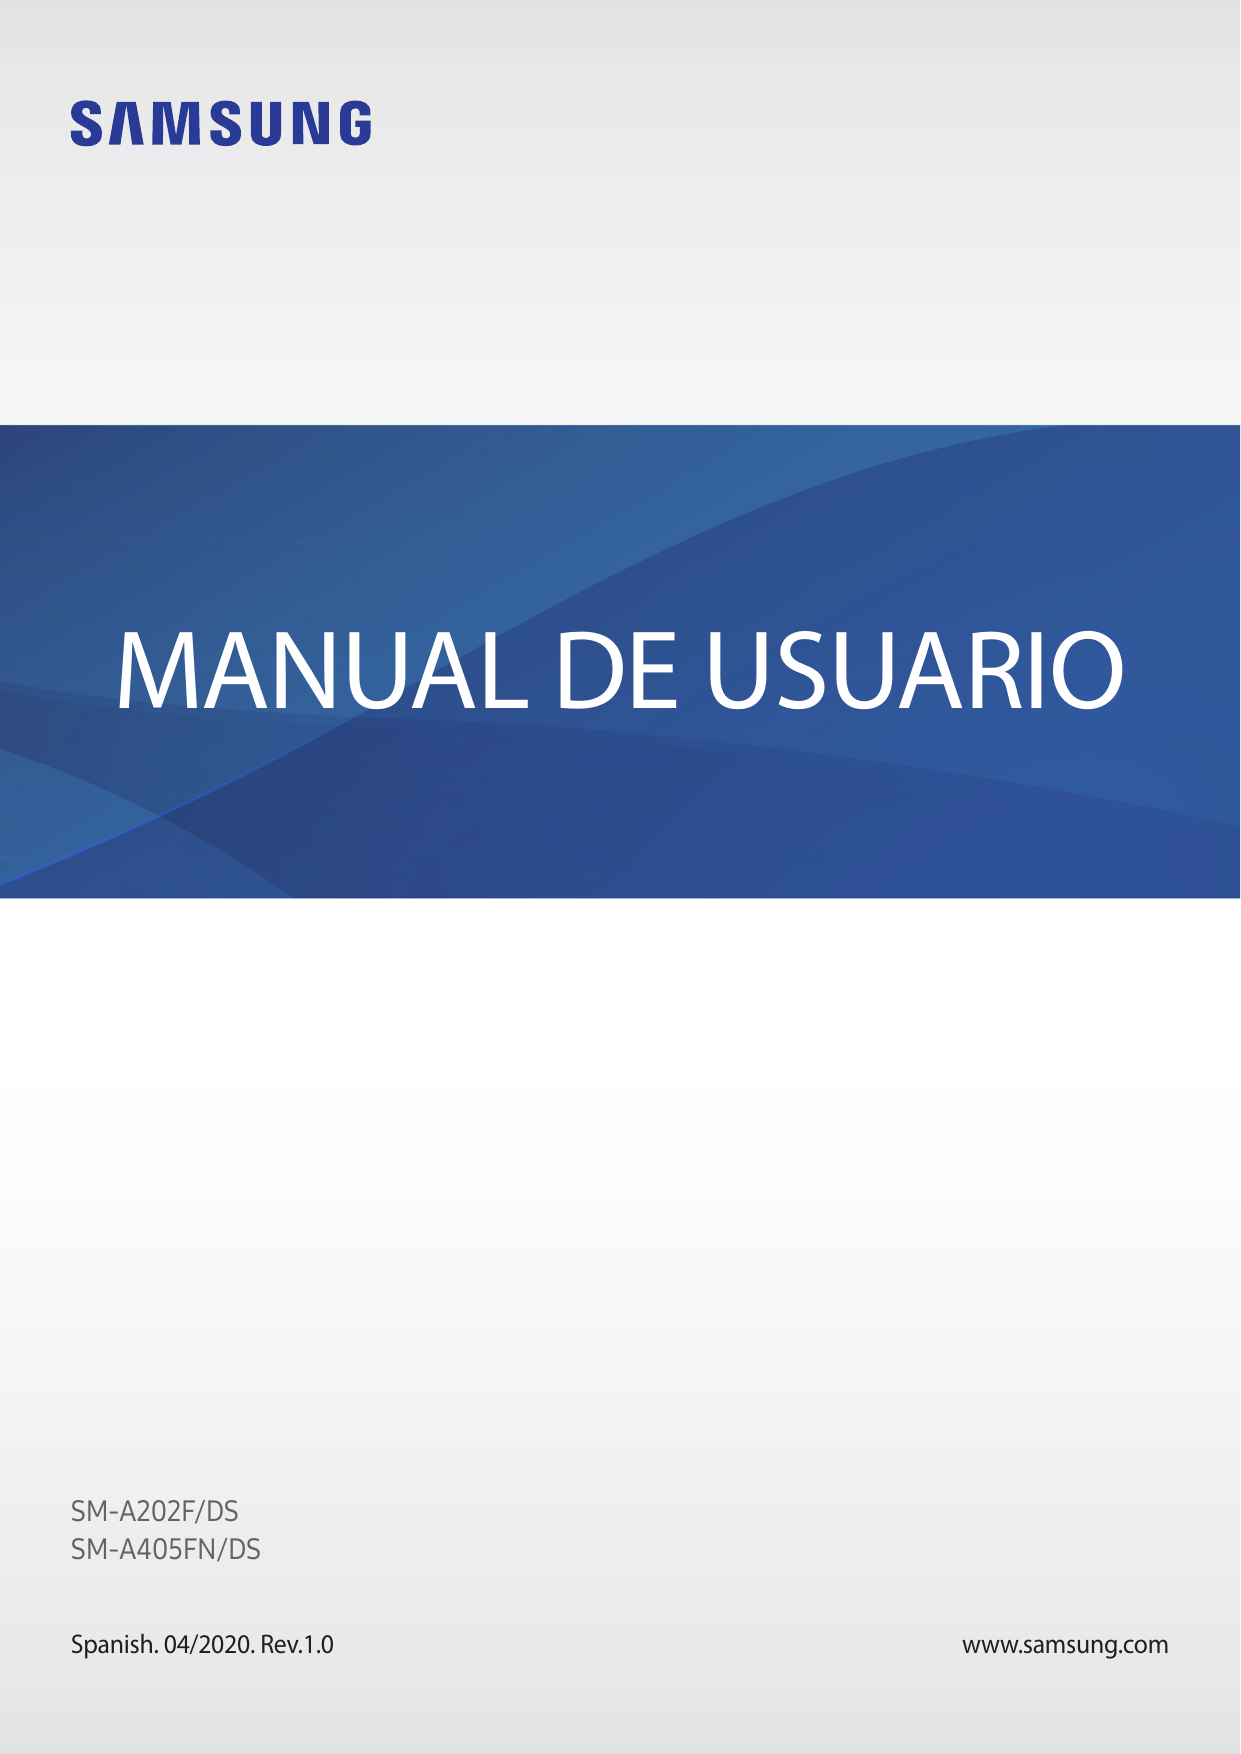 MANUAL DE USUARIOSM-A202F/DSSM-A405FN/DSSpanish. 04/2020. Rev.1.0www.samsung.com